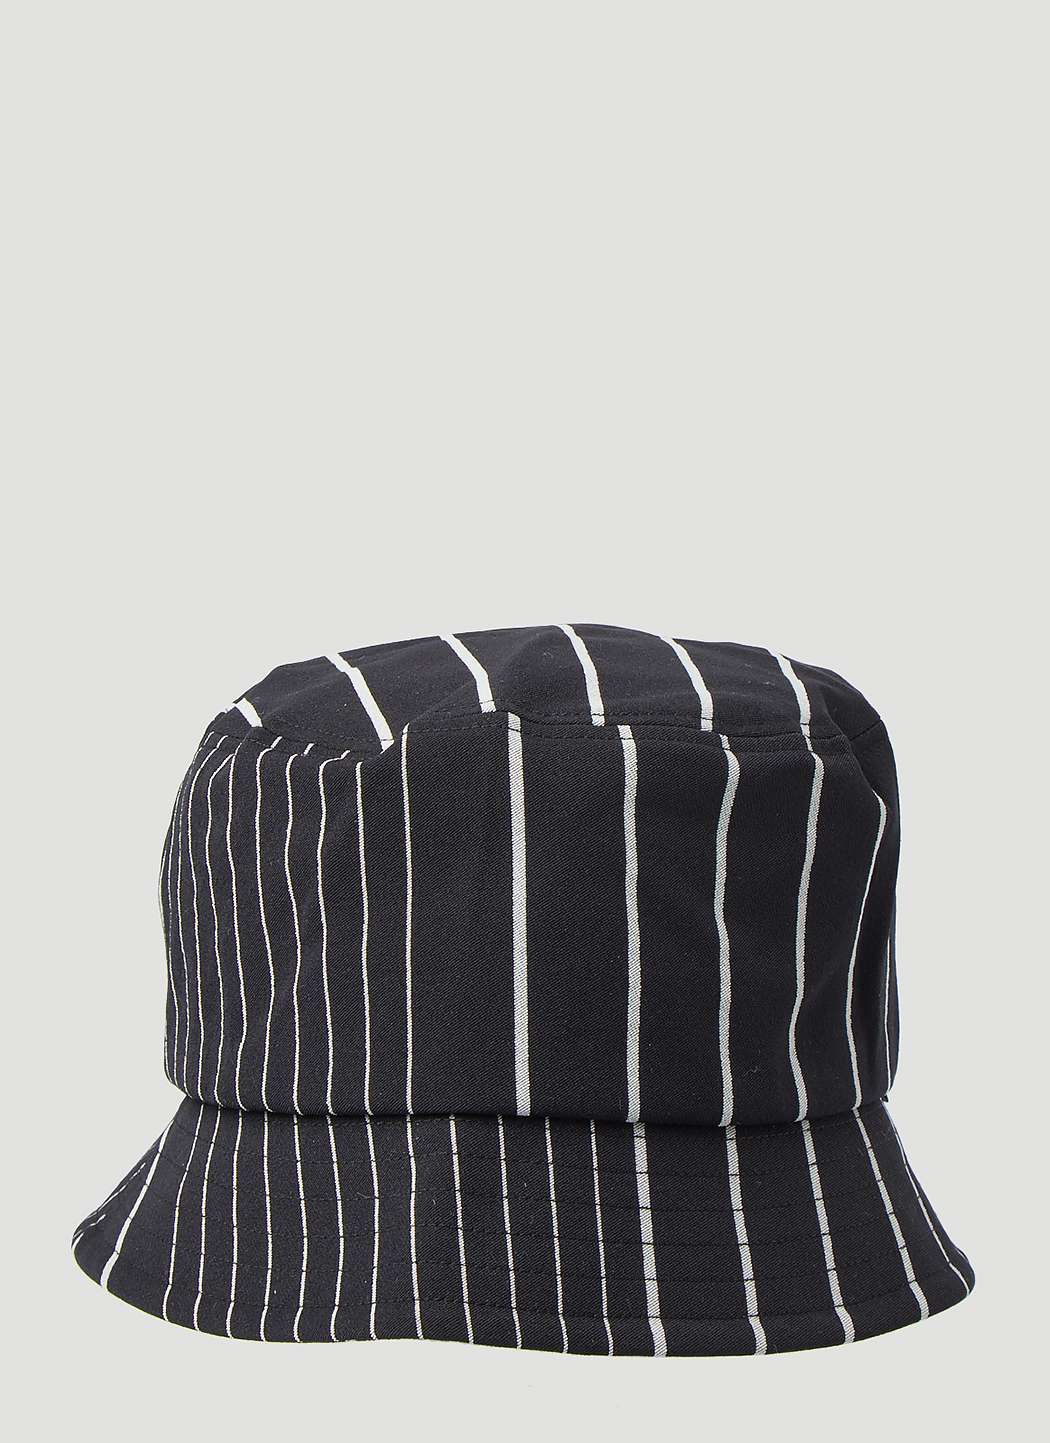 Off-Key Pinstripe Bucket Hat